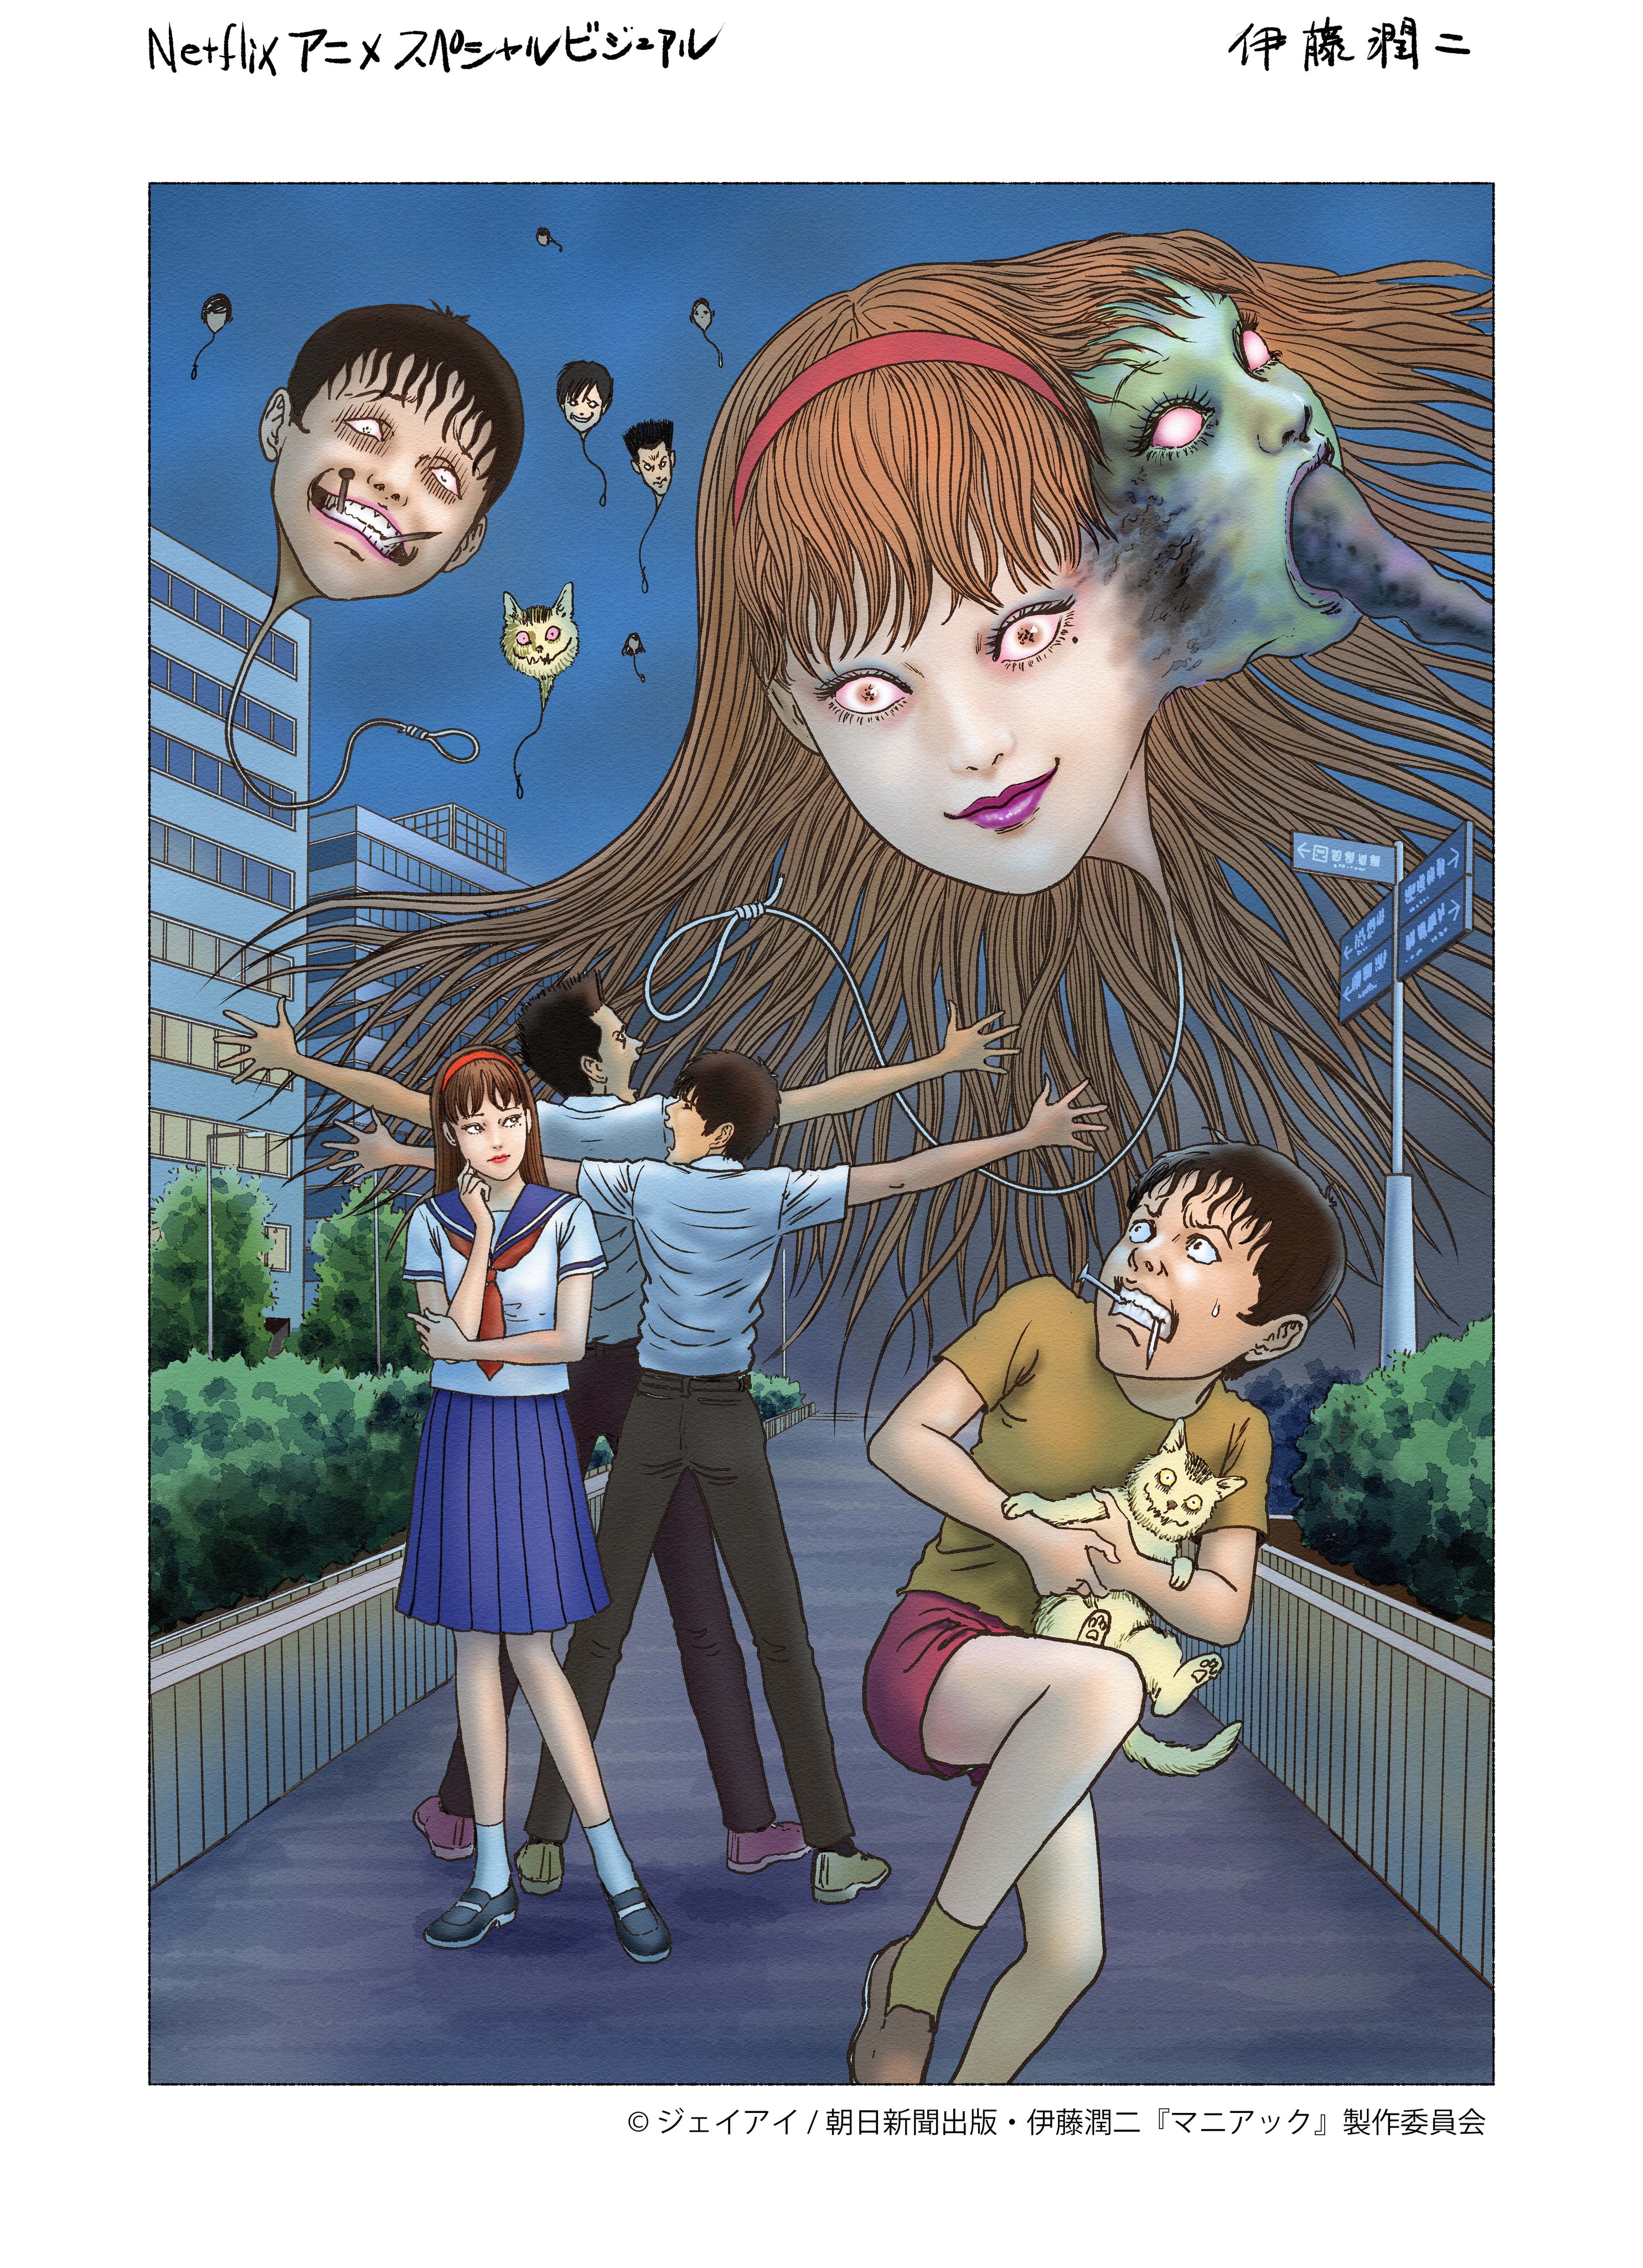 Junji Ito: Todas as histórias do anime da Netflix, ranqueadas